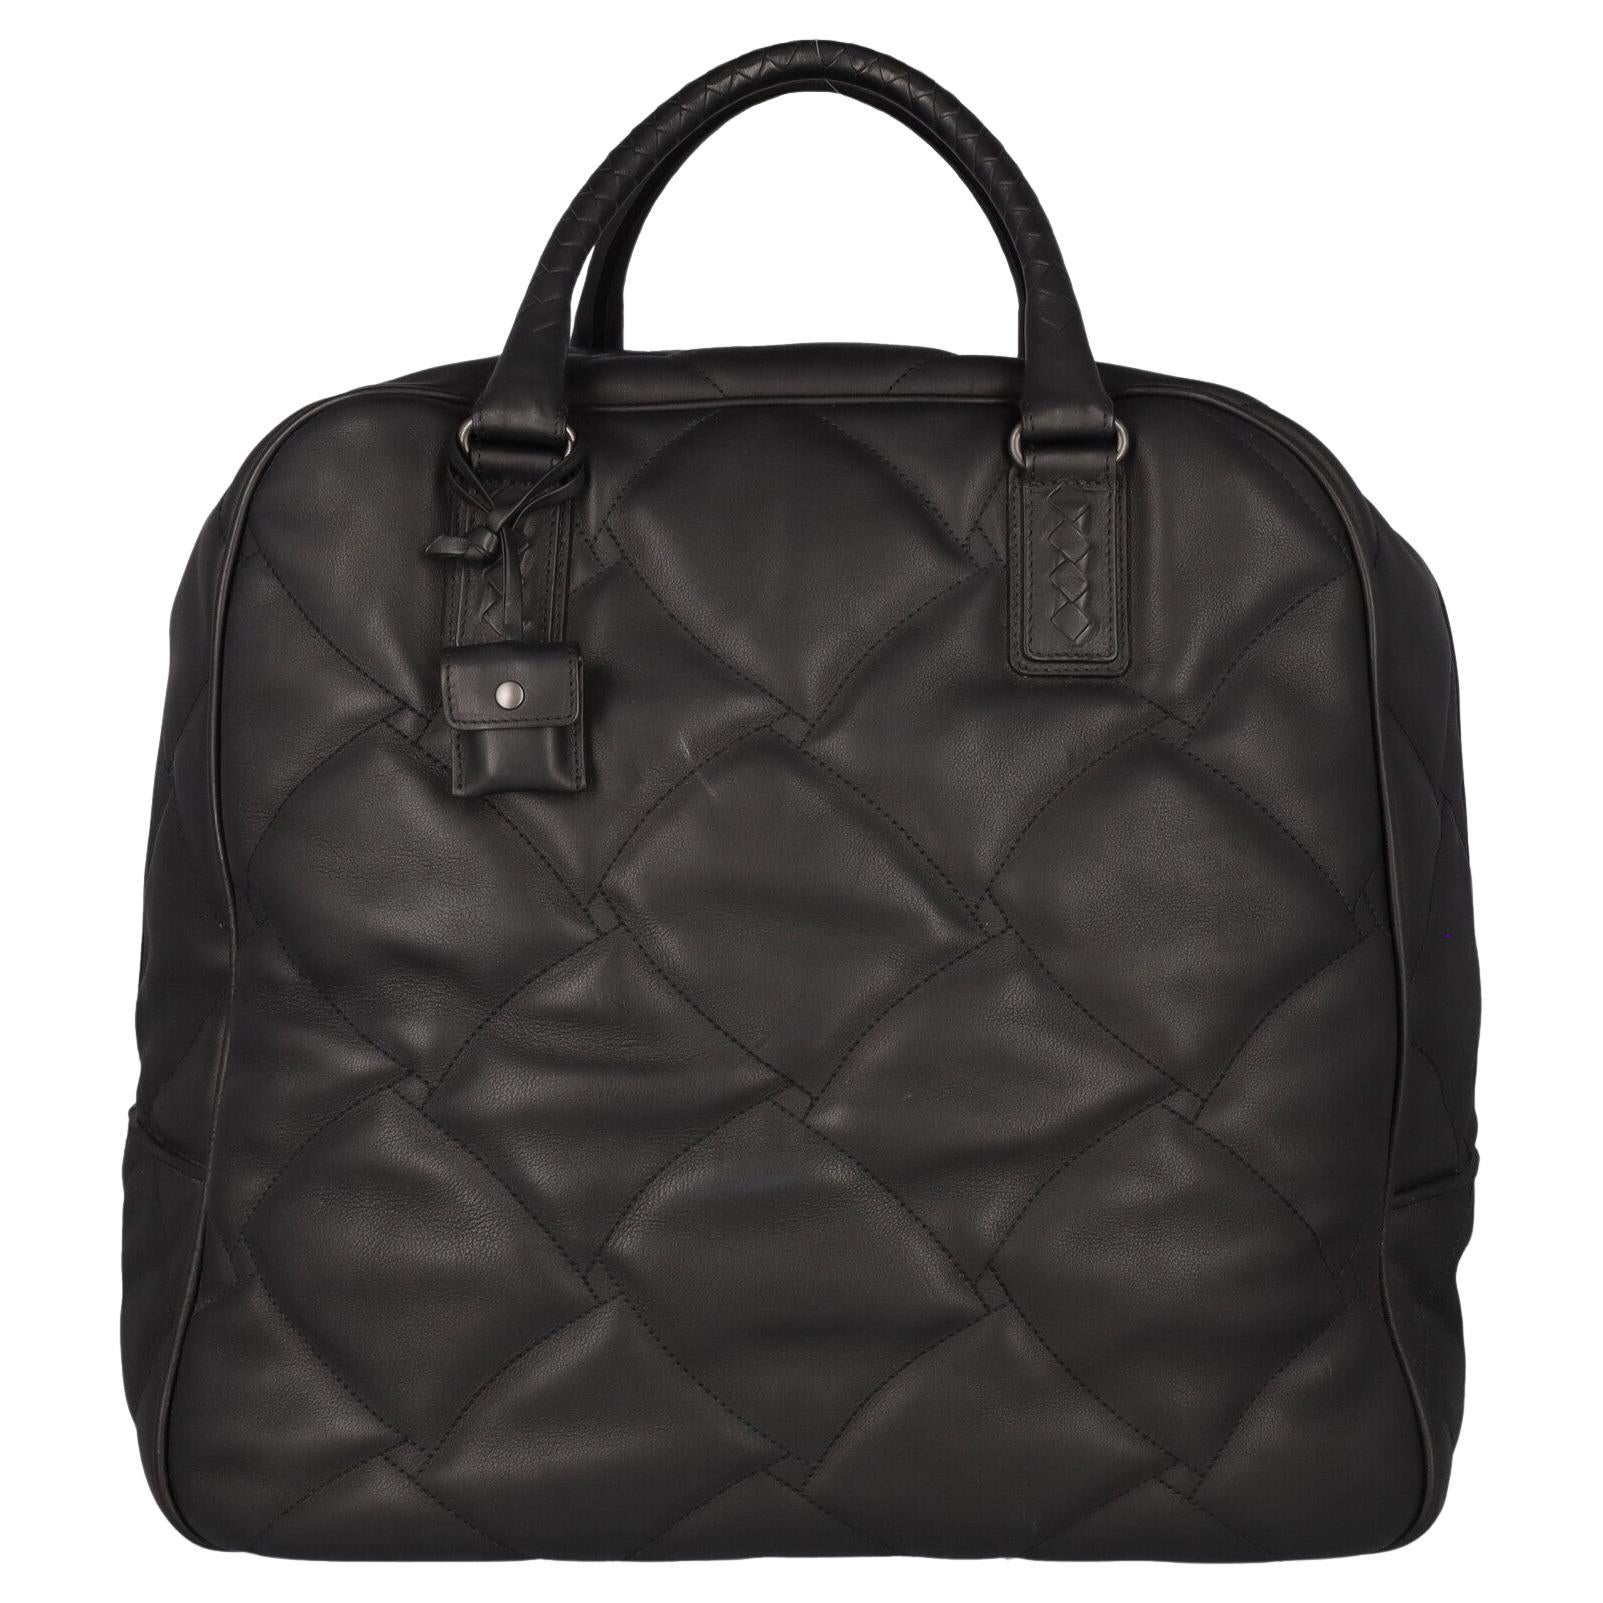 Bottega Veneta Women Travel bags Black Leather  For Sale